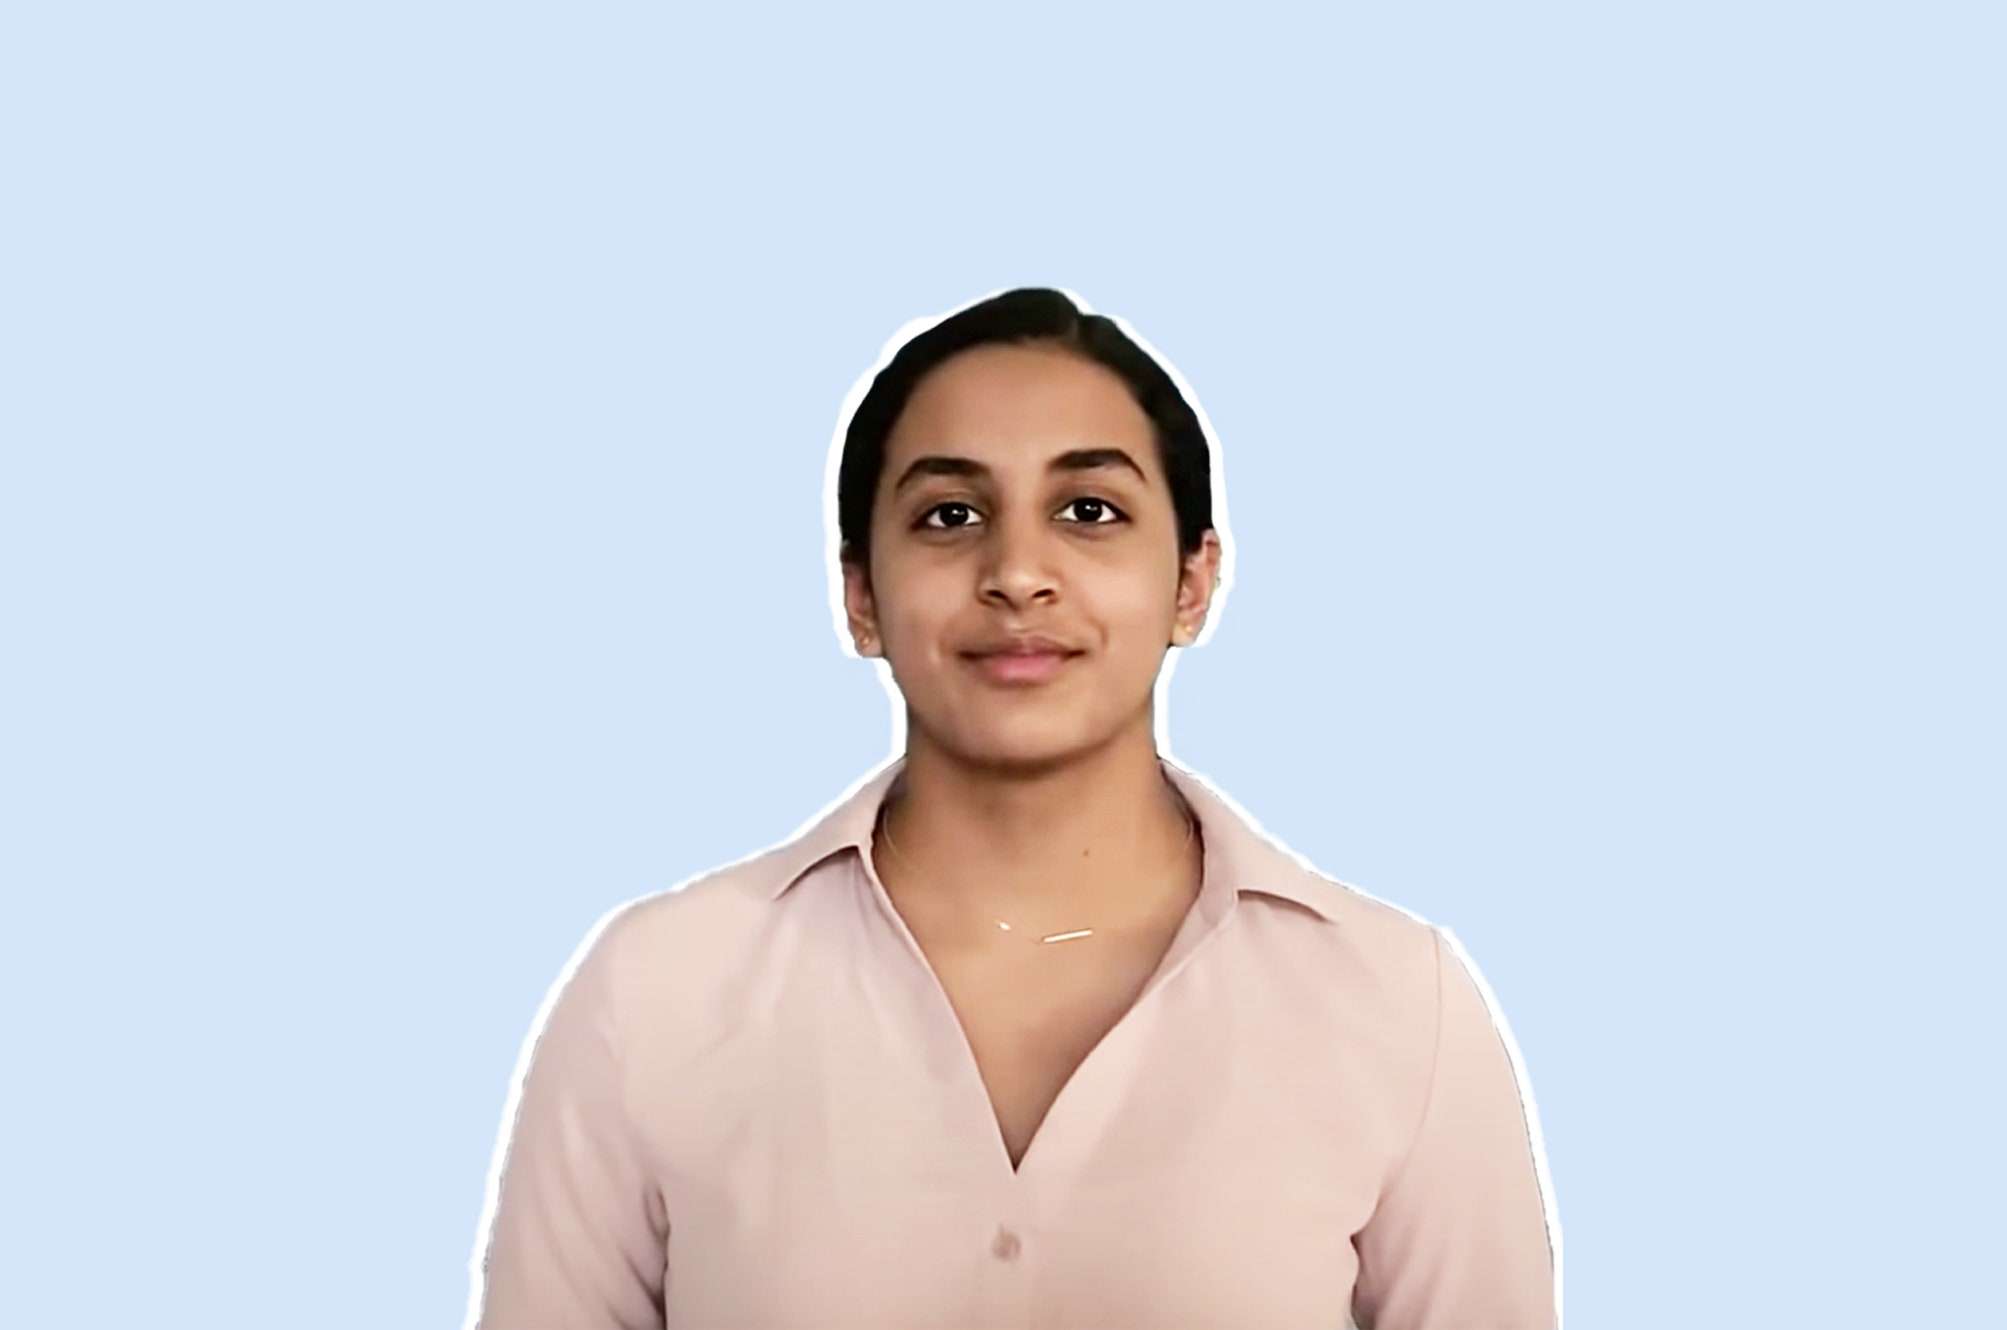 युवा प्रतिभा: भारतीय मूल की छात्रा अनिका ने ढूंढा कोविड-19 का पुख्ता इलाज, बनीं टॉप यंग साइंटिस्ट